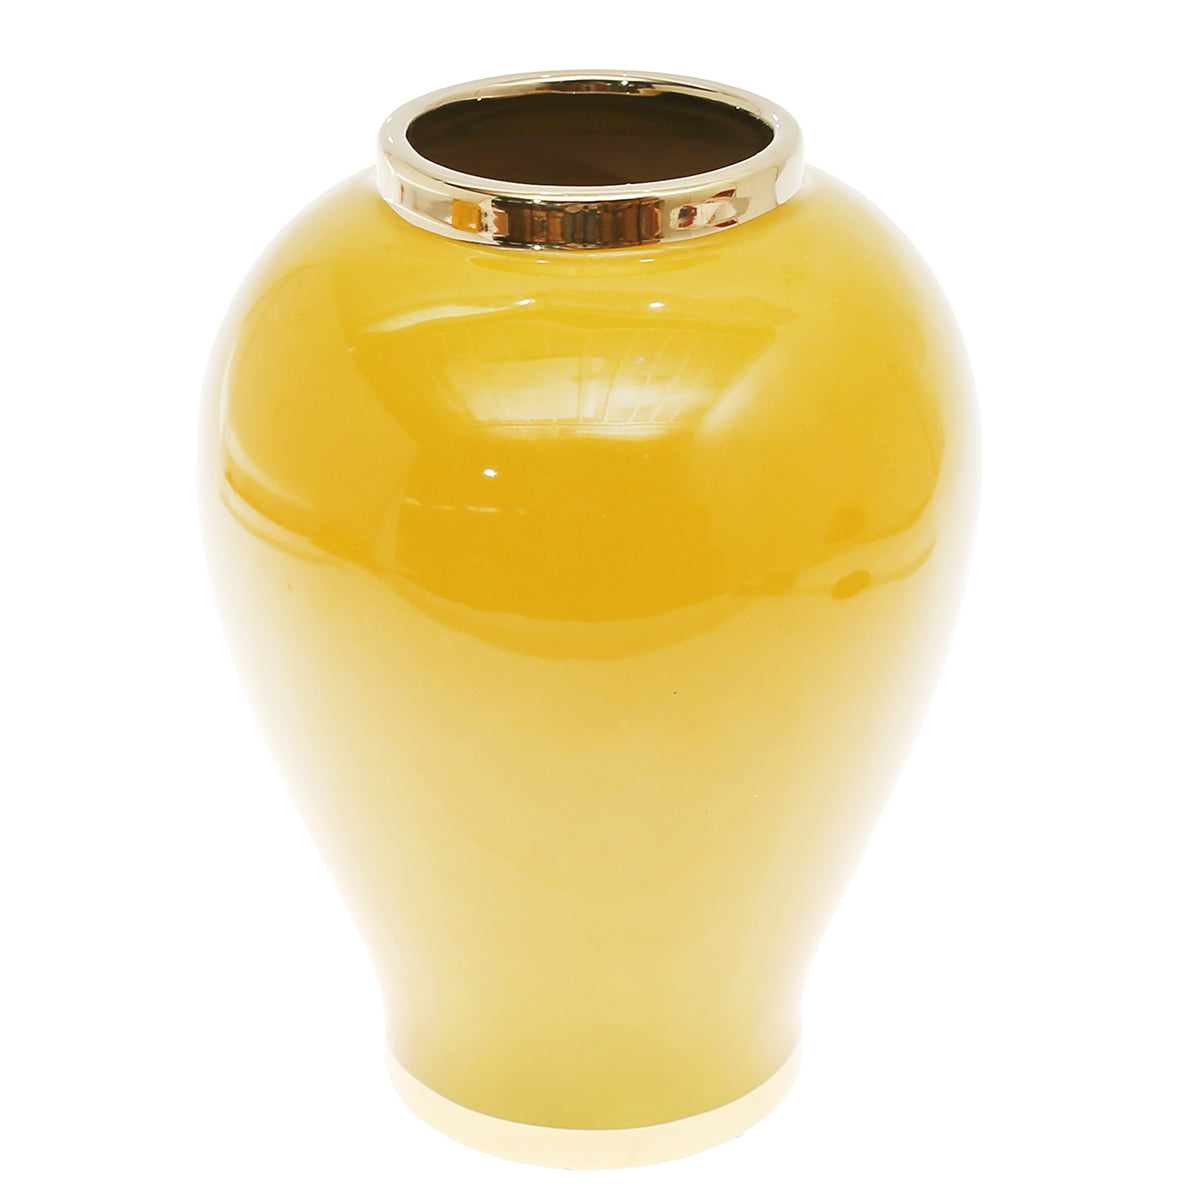 Ceramic Vase L.Z311-509